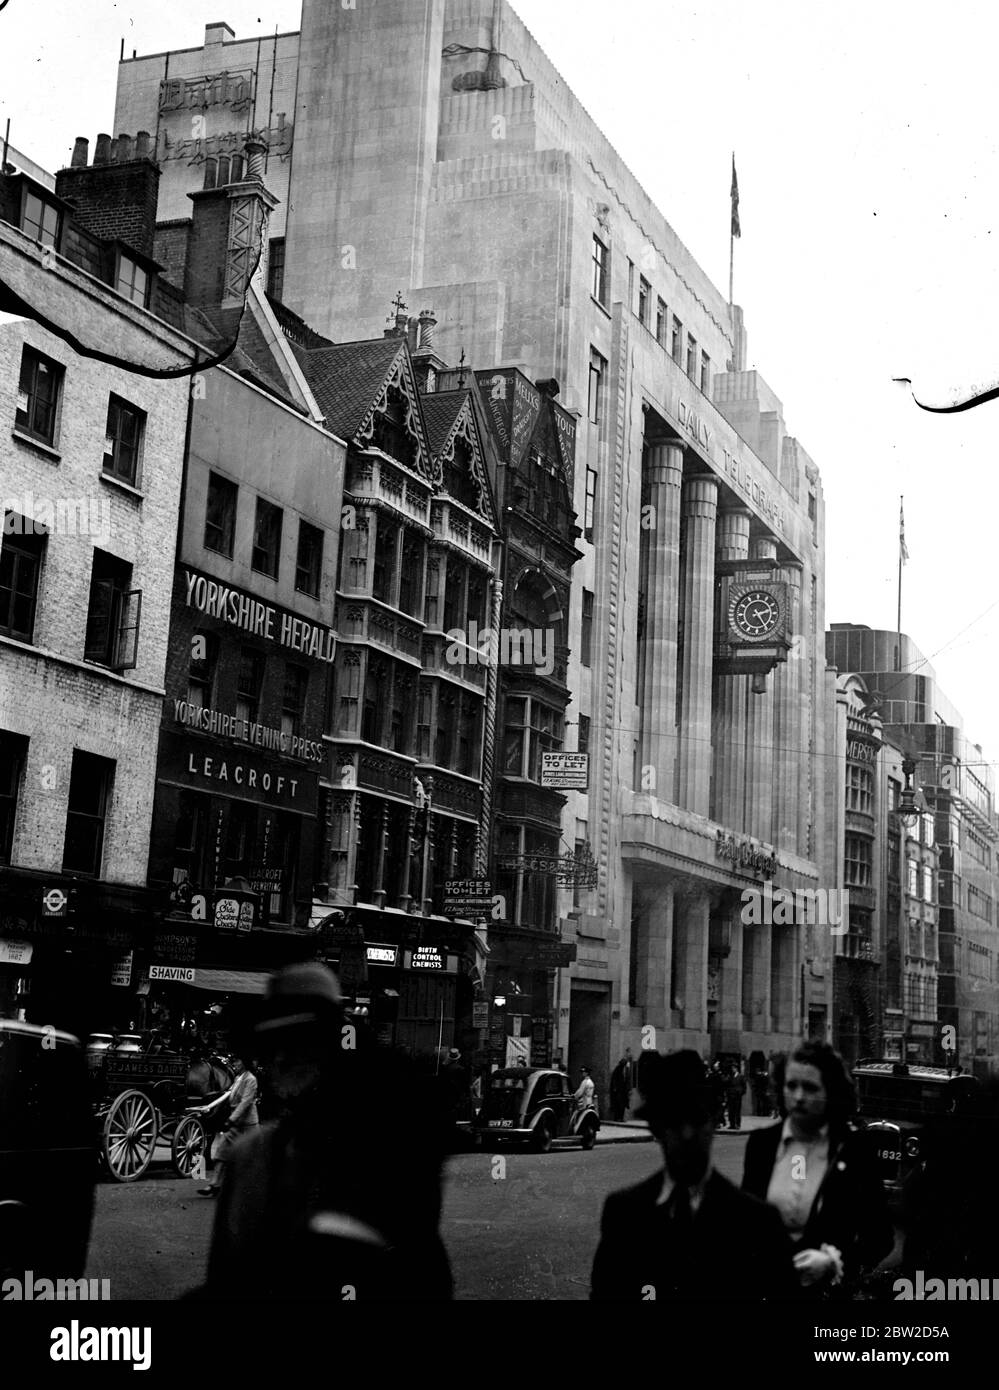 Vue extérieure du bâtiment Daily Telegraph de Fleet Street, Londres. Juin 1939 Banque D'Images